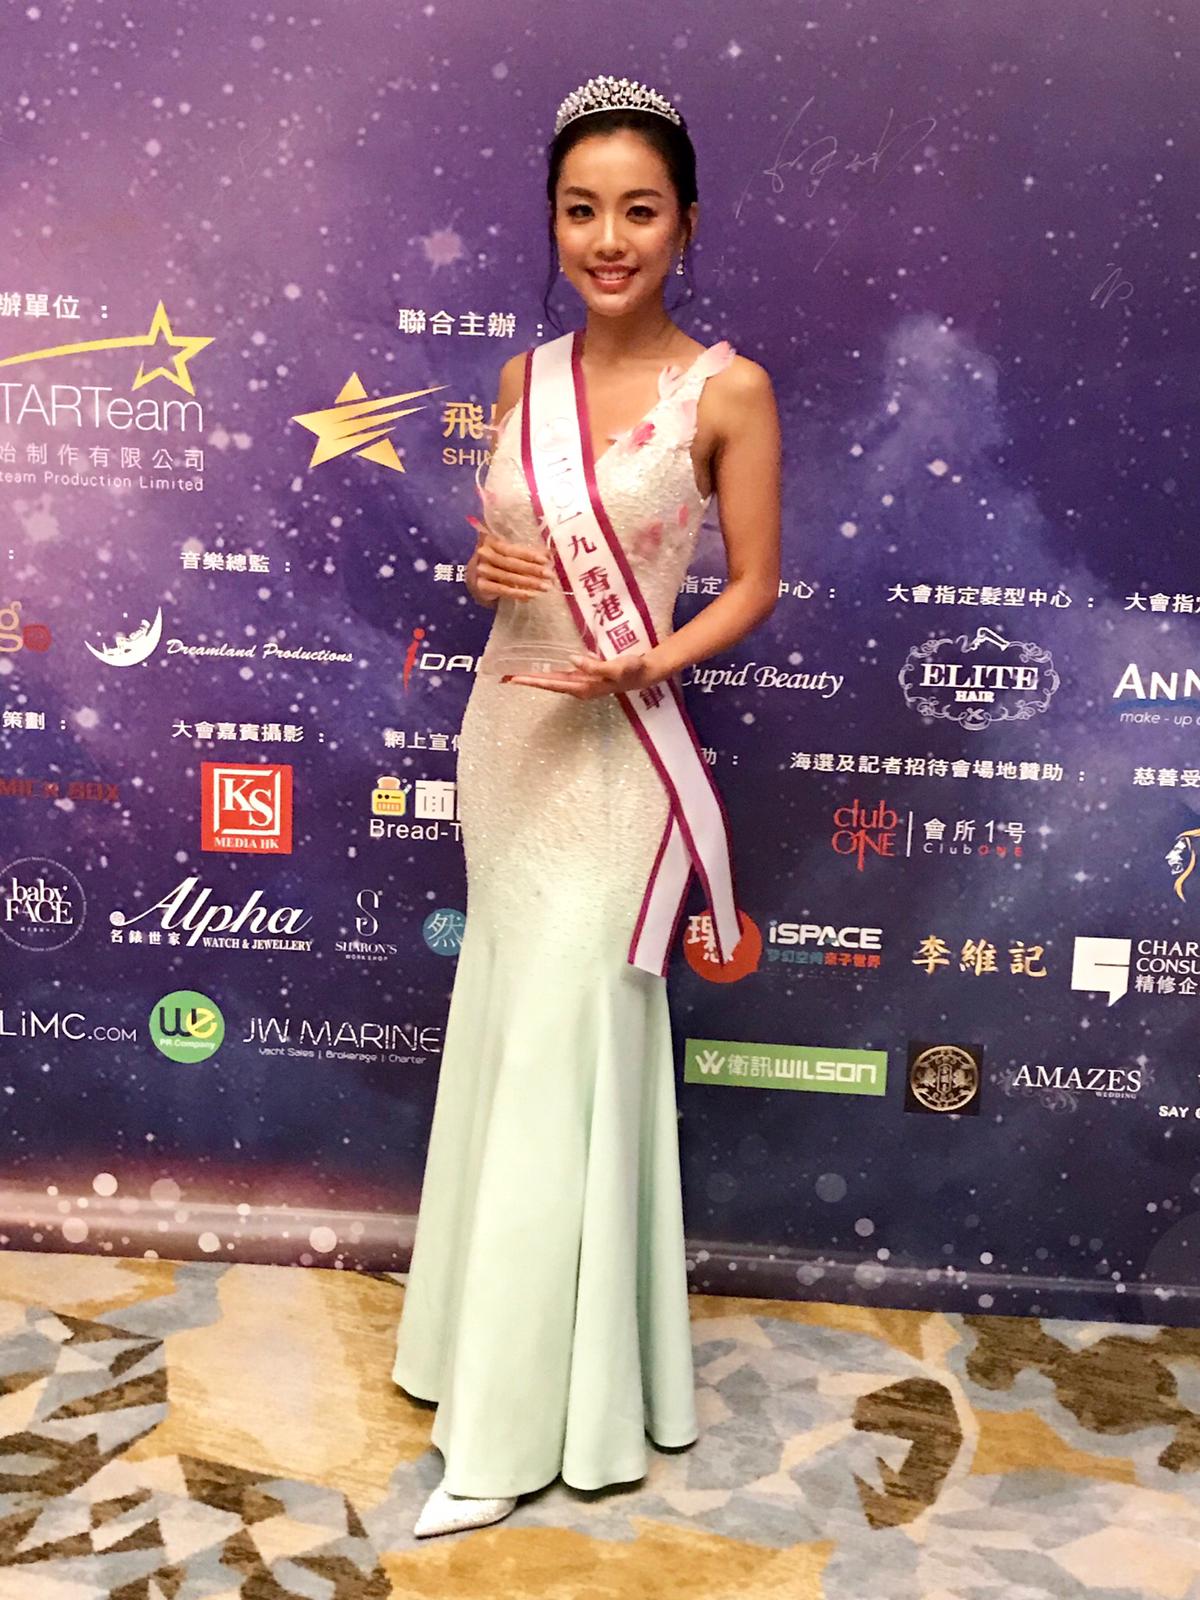 成就梦想 步向国际 2019亚洲太平洋国际小姐闪耀丽思卡顿